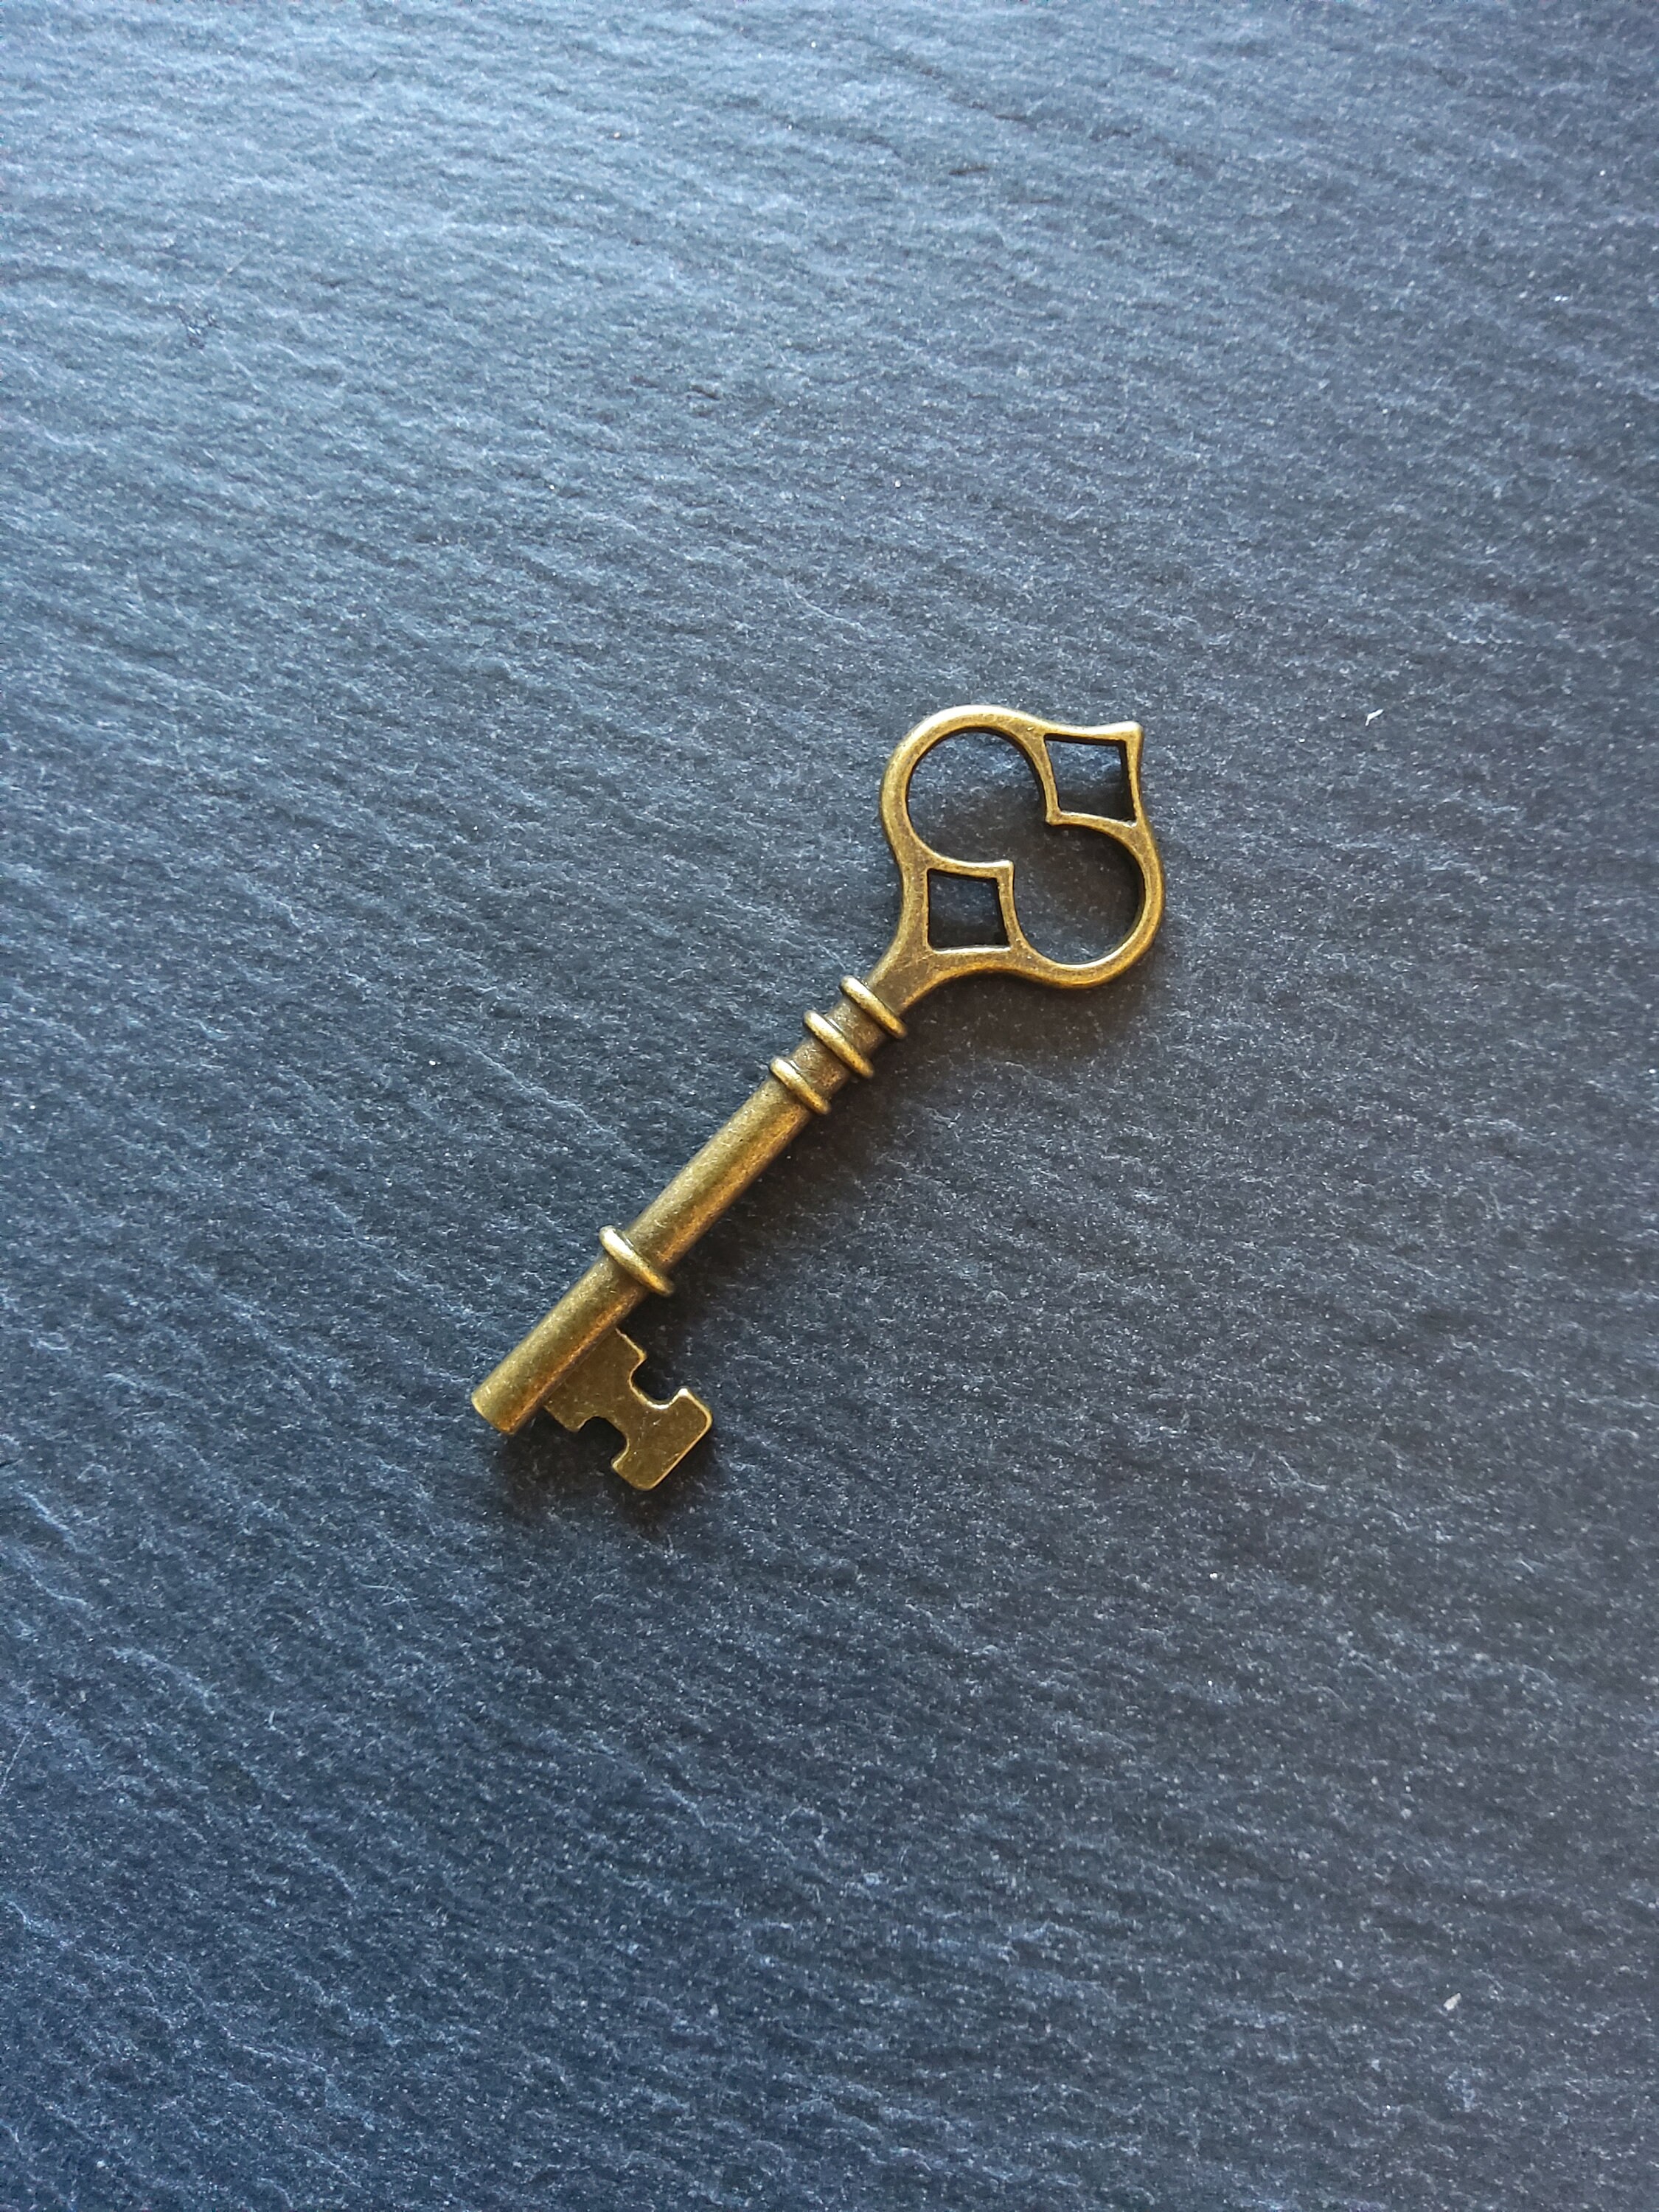 Keychain Keyrings Keychain Hardware Key Holder Keyring With Swivel Clasps  60mm 20pcs 